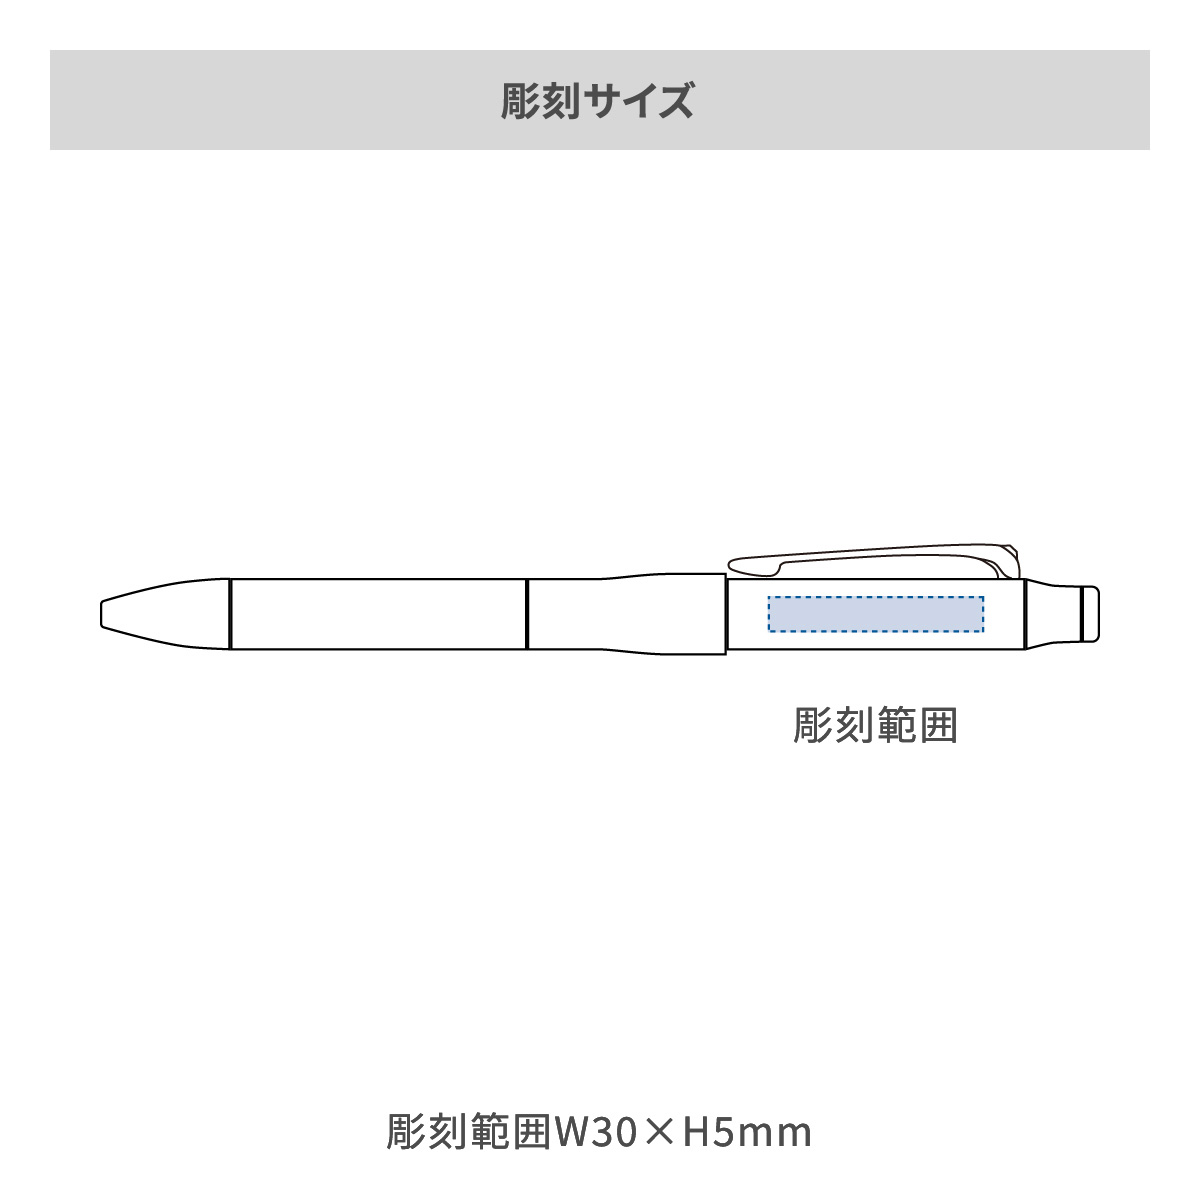 【短納期】三菱鉛筆 ジェットストリーム プライム 多機能ペン 3&1 0.7mmの名入れ範囲